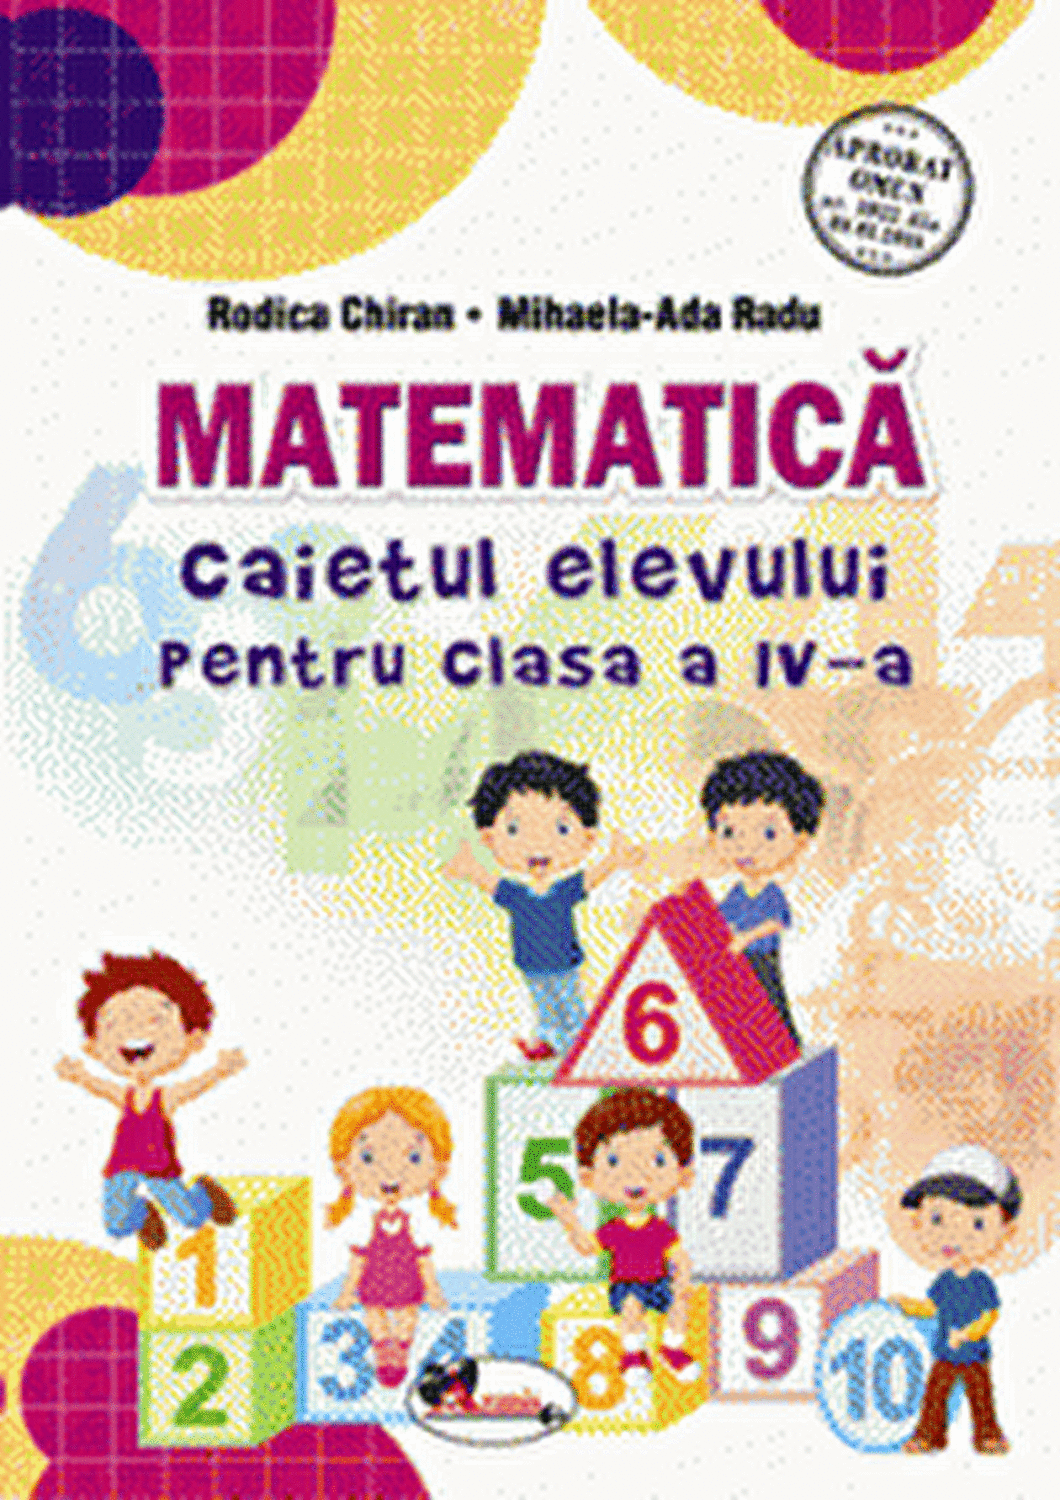 Matematica – Caietul elevului pentru clasa a IV-a | Rodica Chiran, Mihaela-Ada Radu Aramis